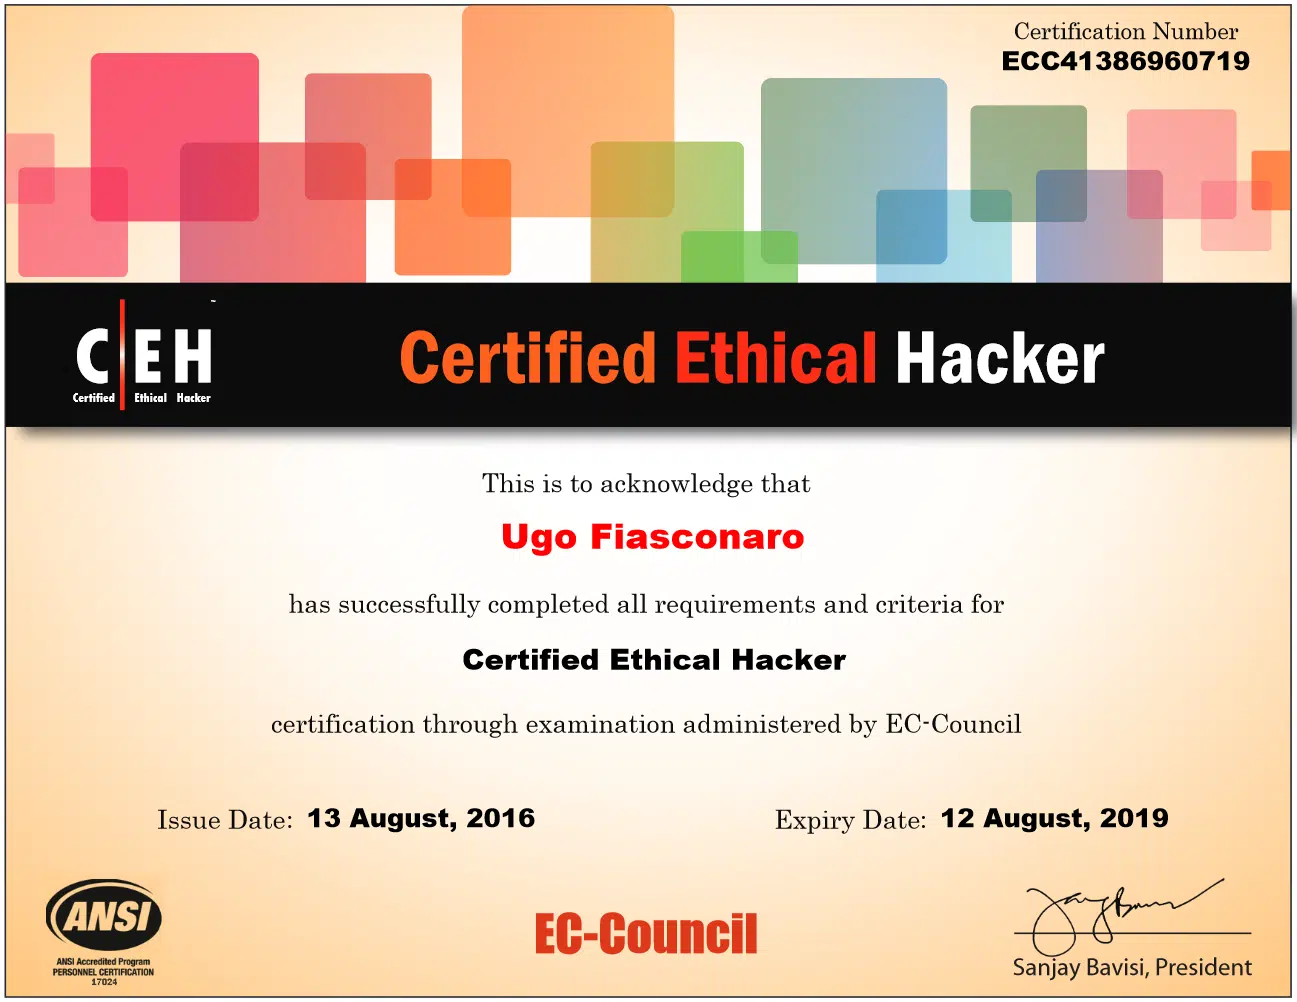 Esperto di CEH hacking etico.